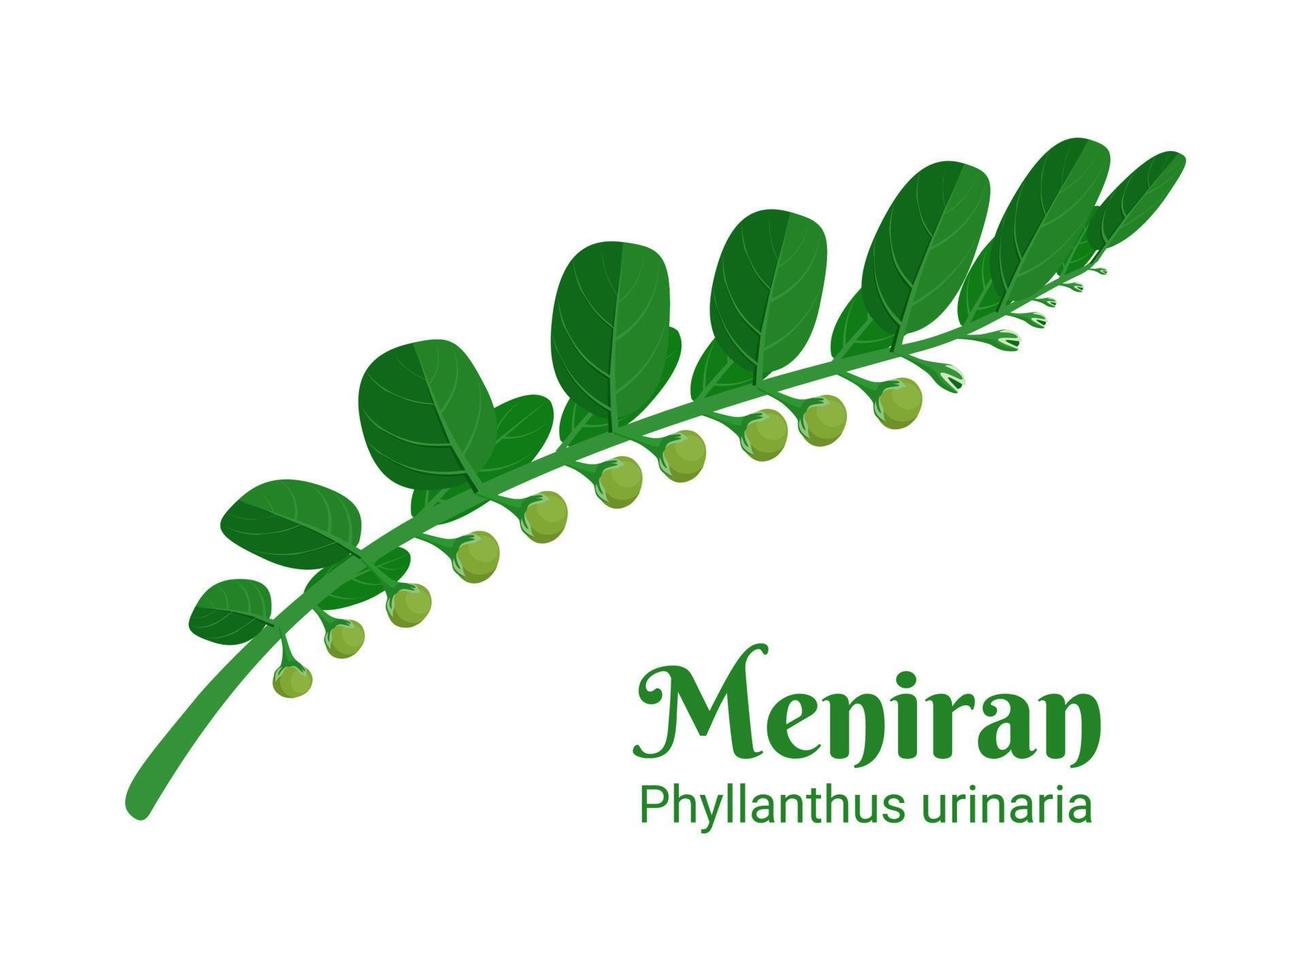 vektorillustration, meniran eller phyllanthus urinaria, är en buskväxt som används som medicinsk ört i Asien. vektor